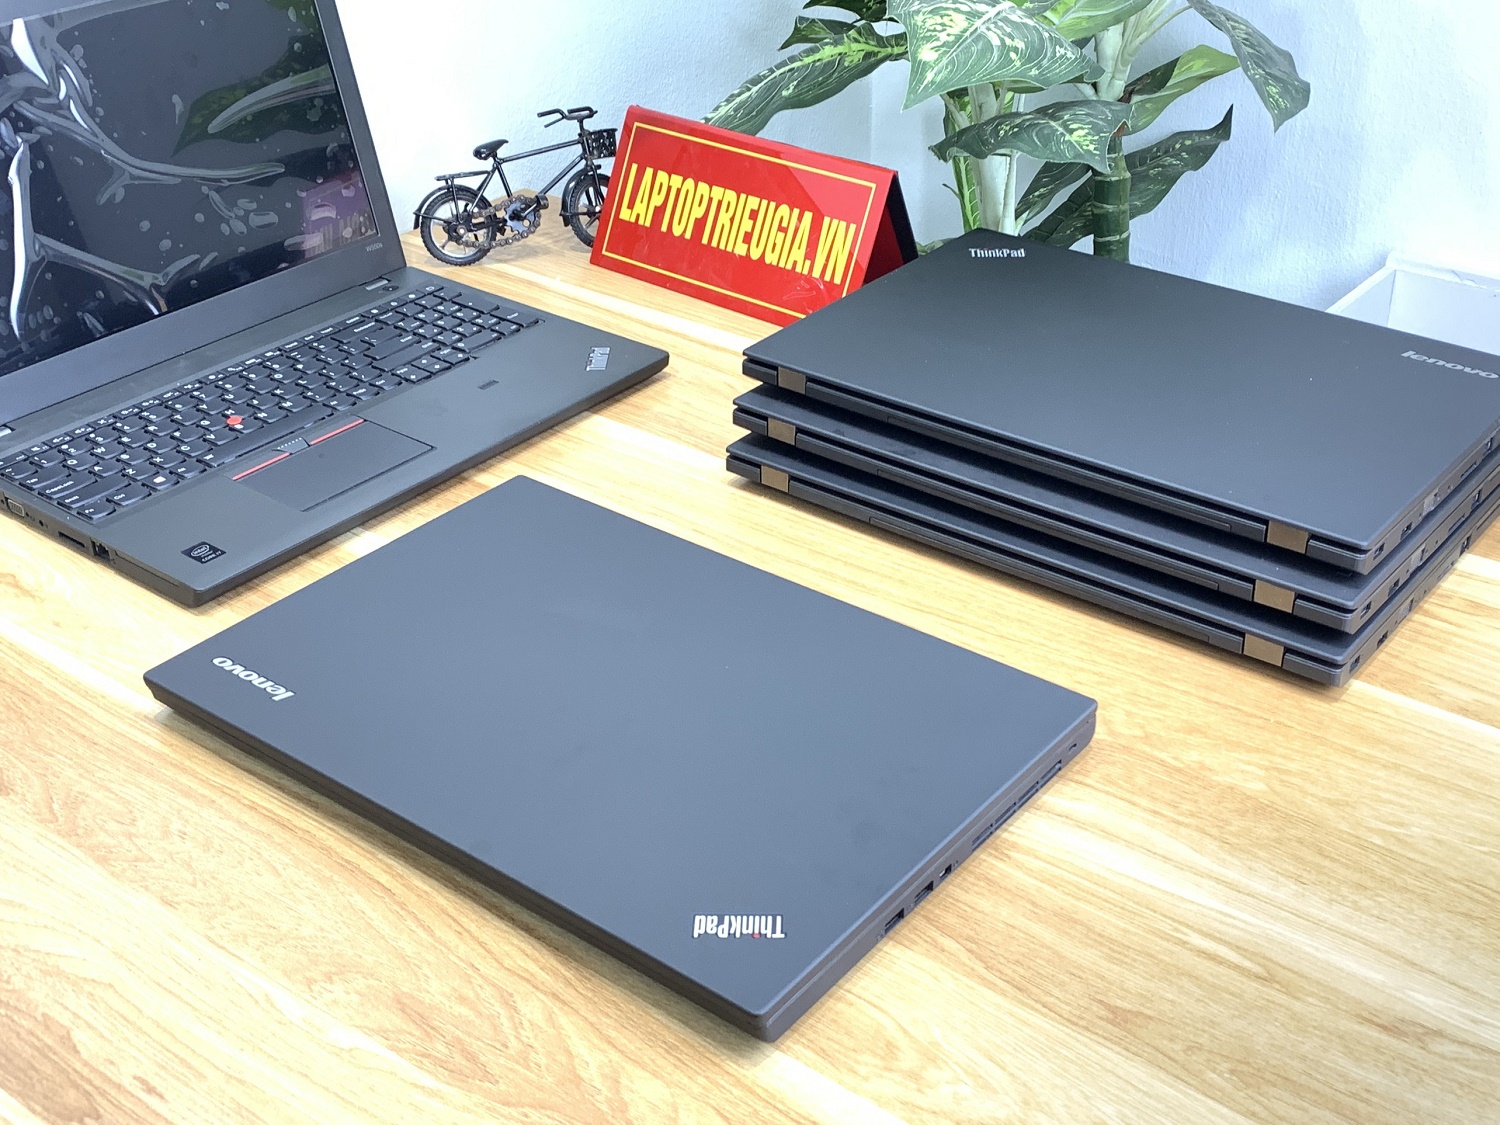 Lenovo Thinkpad W550s: i7-5600U | Ram 8Gb | SSD 256Gb | Quadro K620M | Màn 15.6 3K  | Máy đẹp likenew